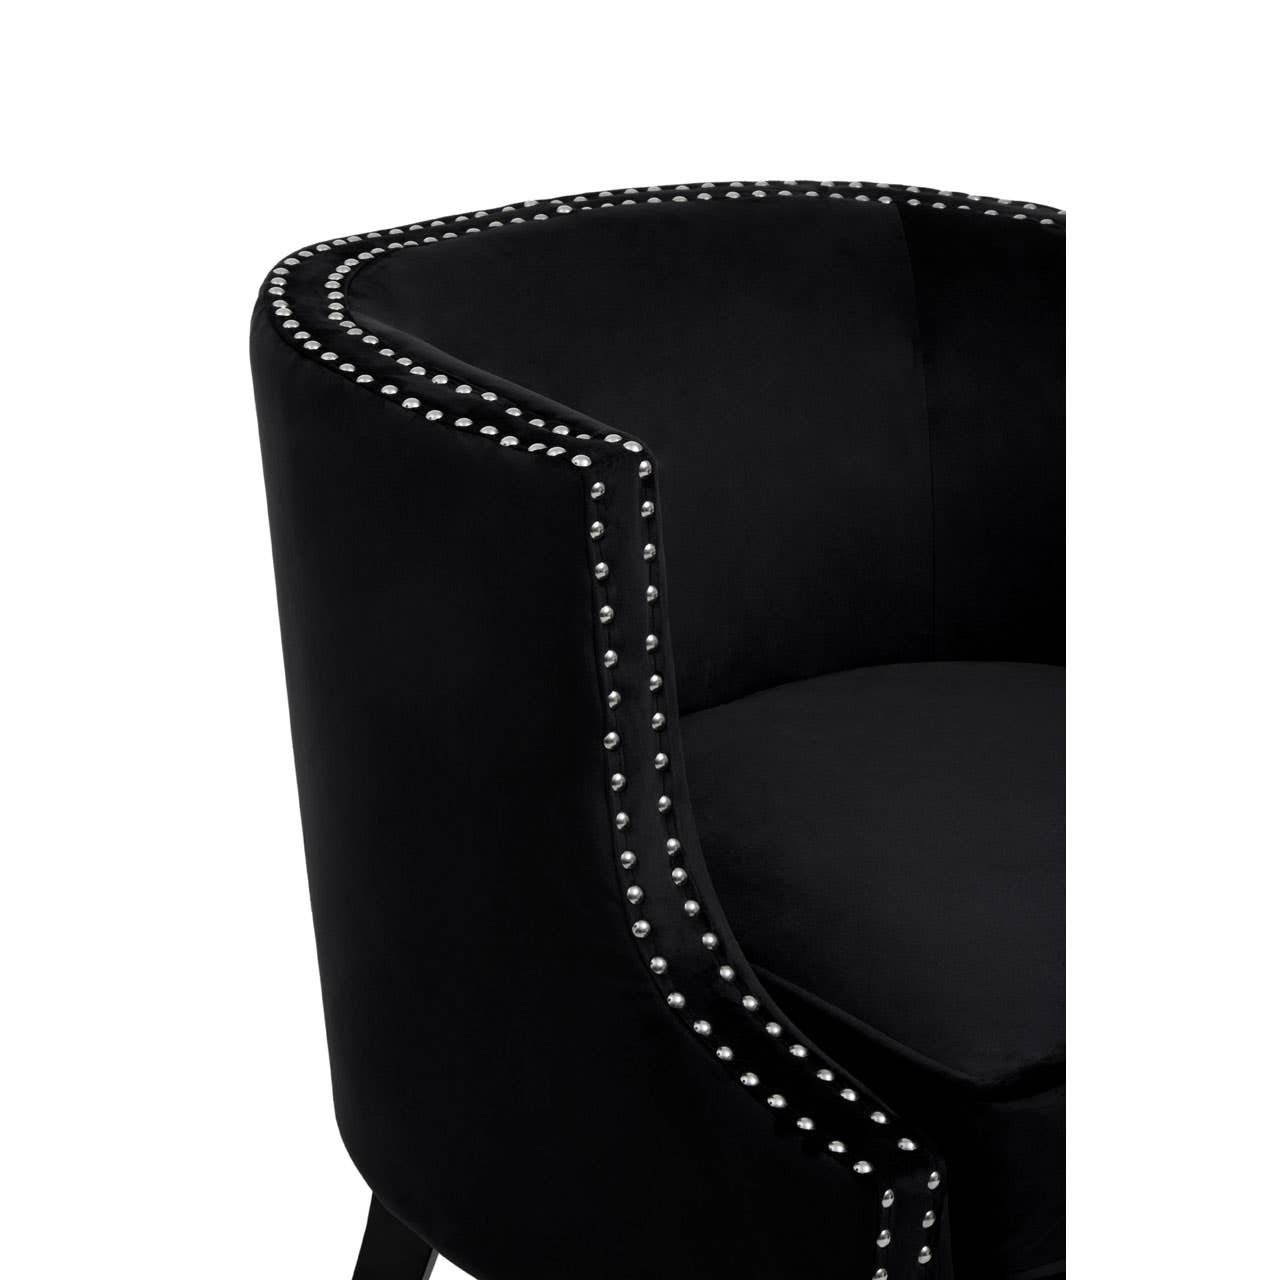 Noosa & Co. Living Larissa Black Velvet Studded Chair House of Isabella UK